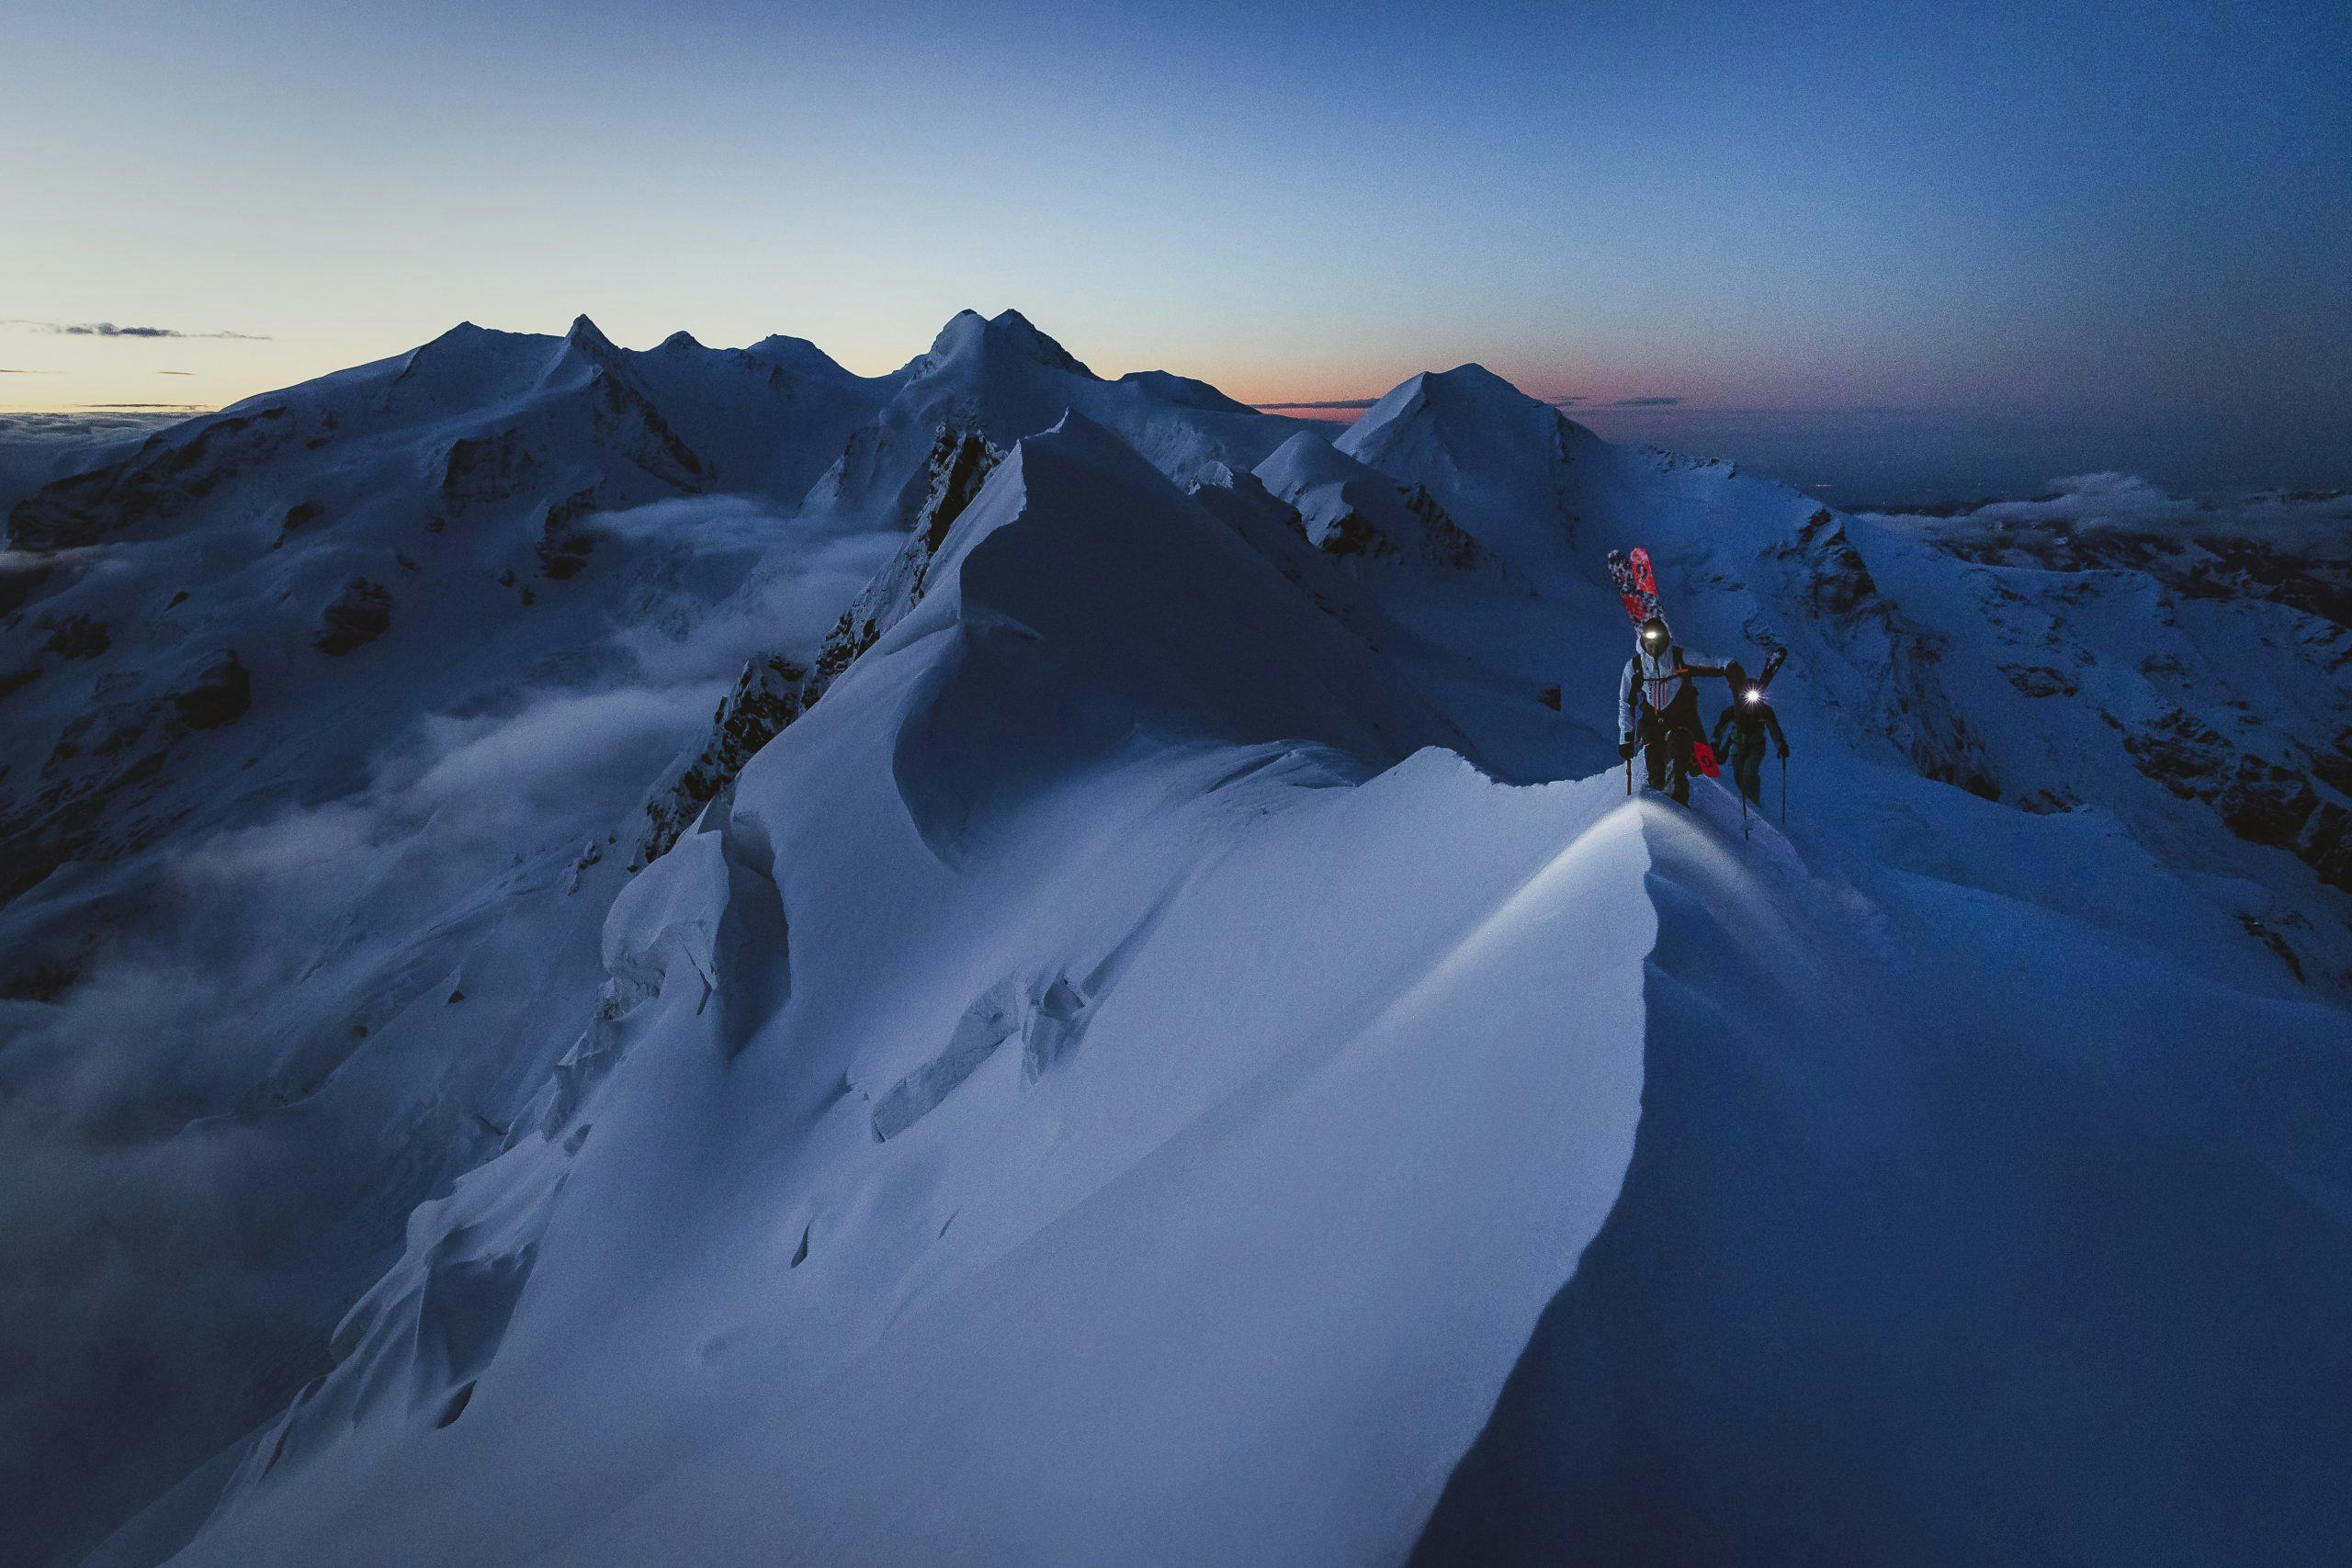 Climbers ascending the Matterhorn mountain